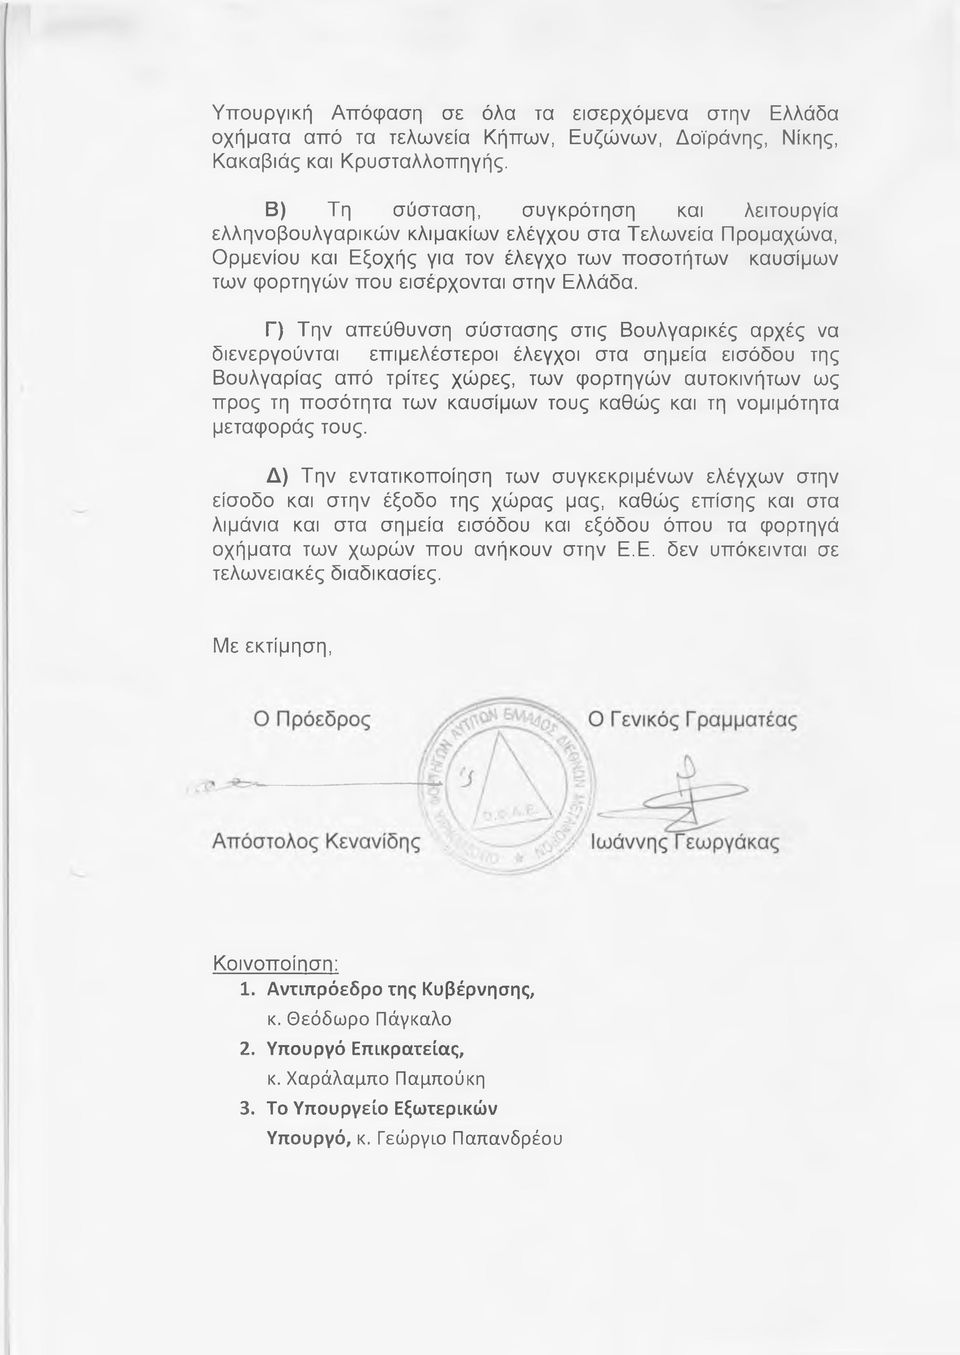 Γ) Την απεύθυνση σύστασης στις Βουλγαρικές αρχές να διενεργούνται επιμελέστεροι έλεγχοι στα σημεία εισόδου της Βουλγαρίας από τρίτες χώρες, των φορτηγών αυτοκινήτων ως προς τη ποσότητα των καυσίμων